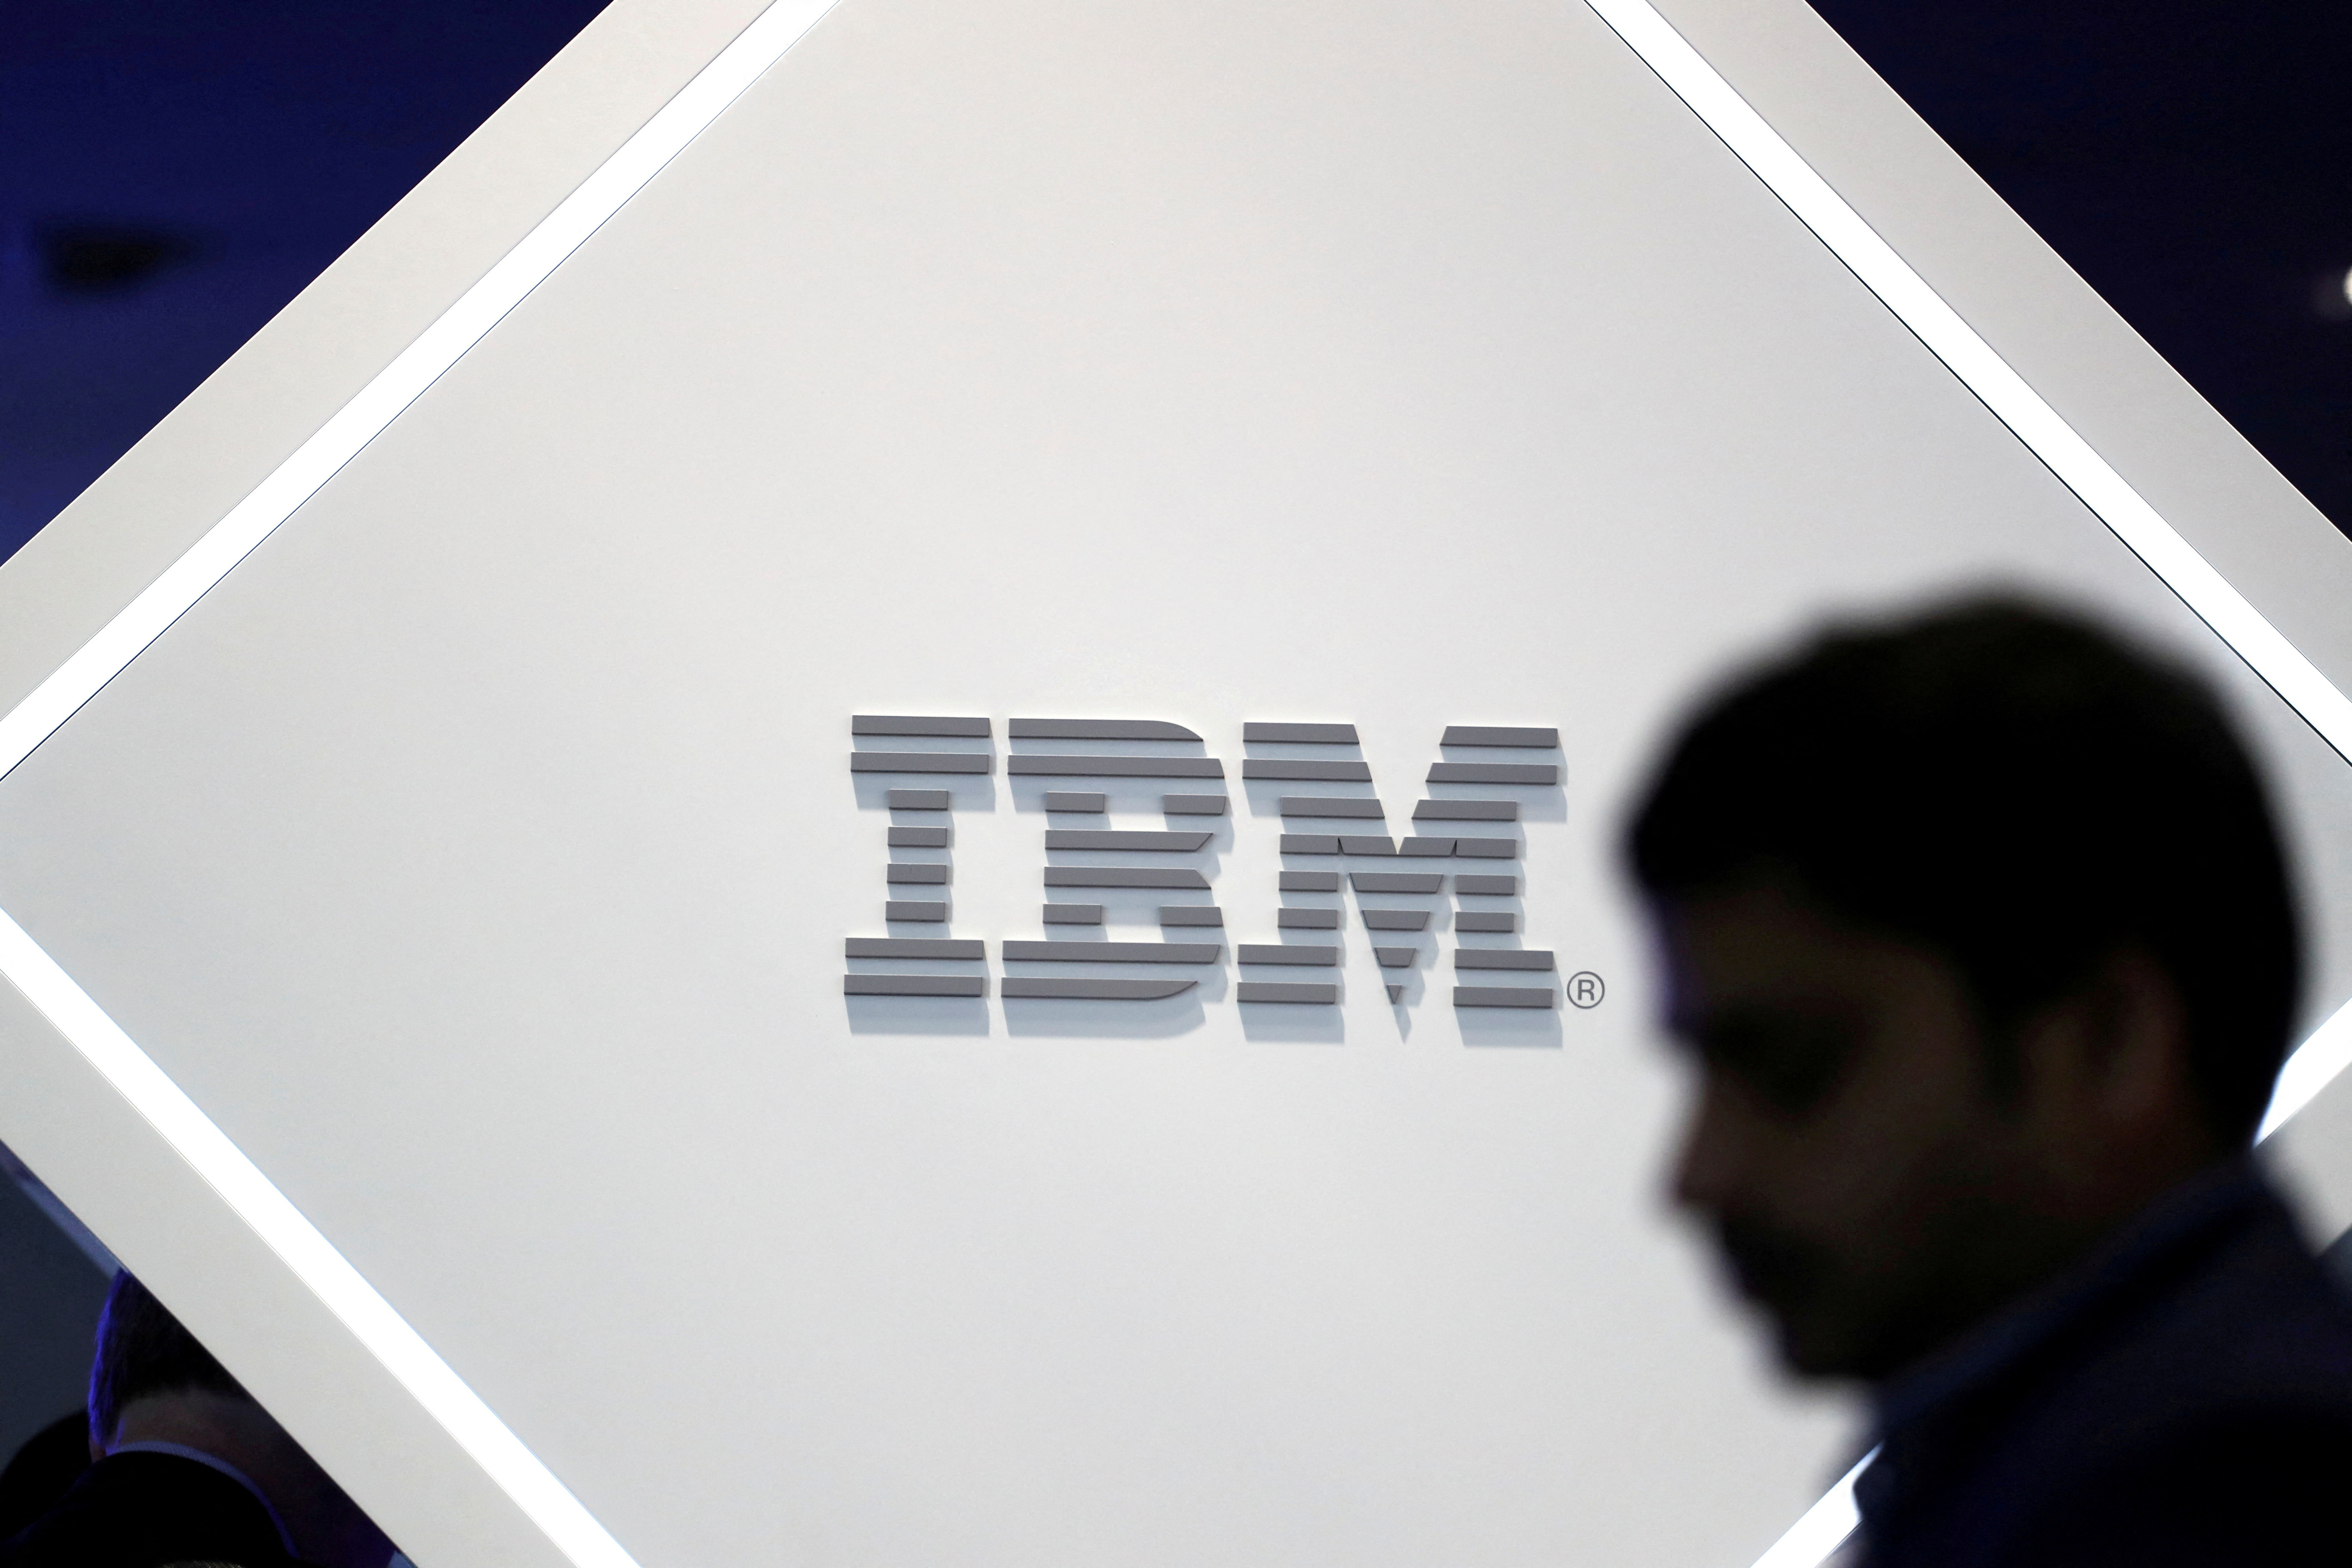 Según IBM, existen actualmente 6 principales barreras para introducir la Inteligencia Artificial en las empresas de Latinoamérica: habilidades, costos, plataformas, ‘vendor lock-in’, complejidad y escalabilidad. (REUTERS/Sergio Perez//File Photo)